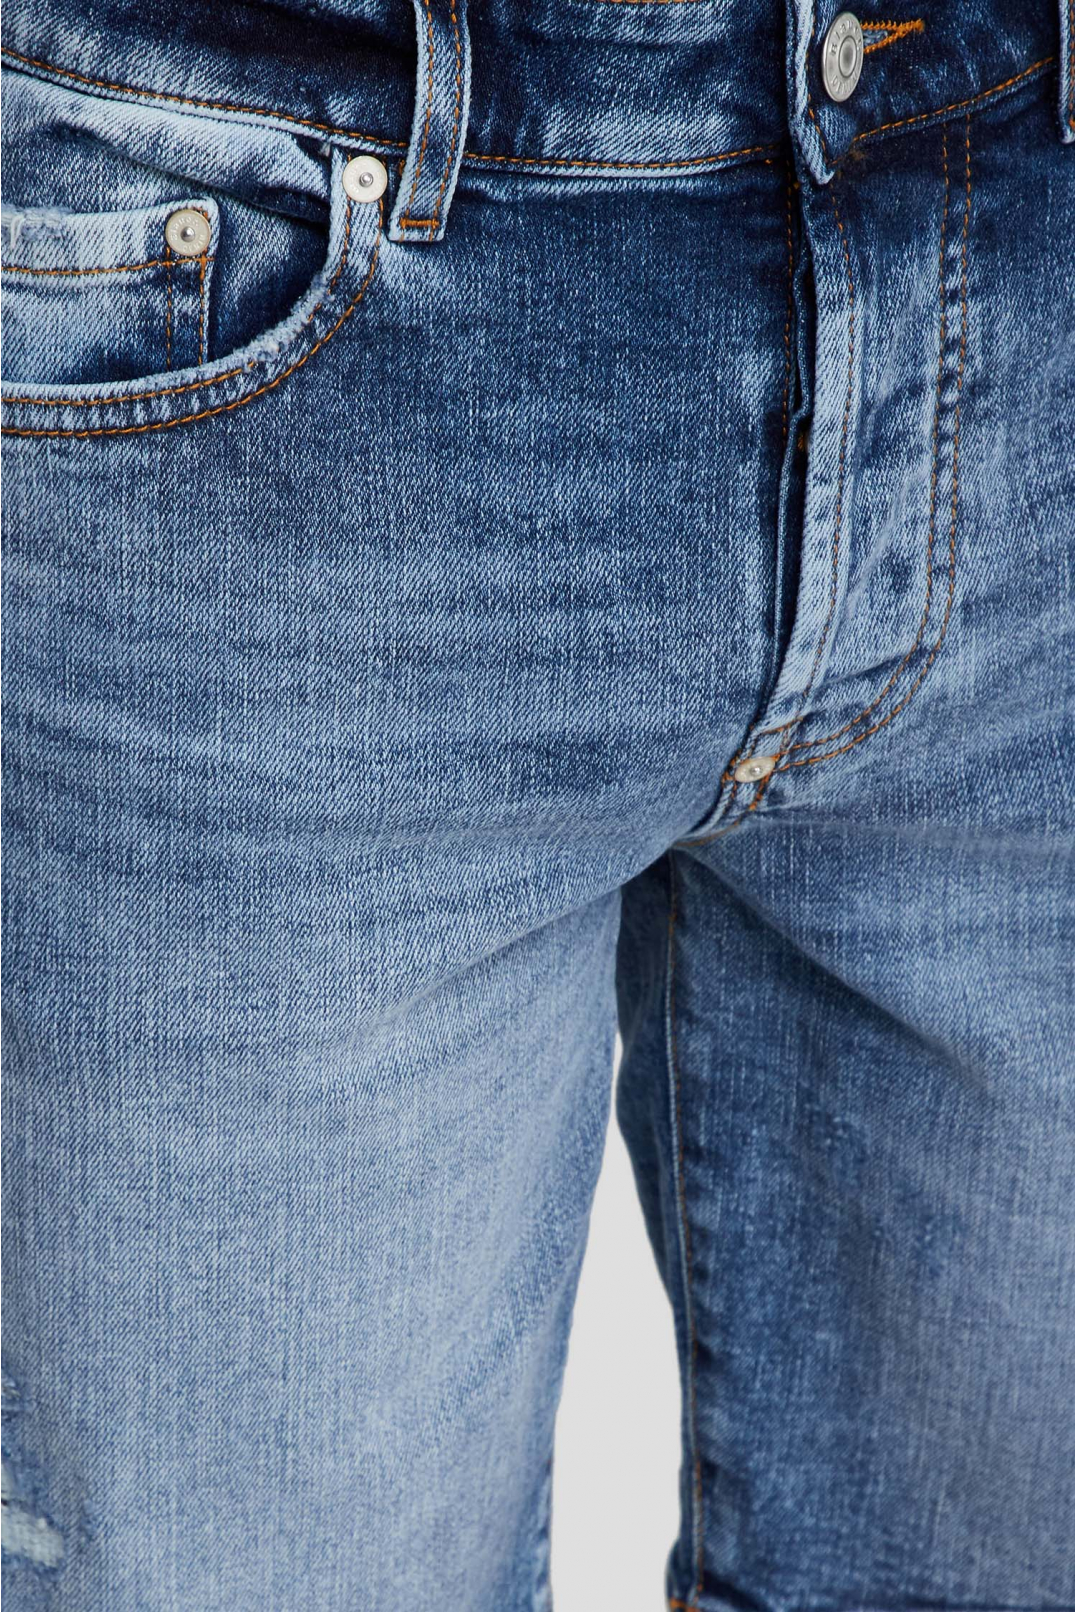 Чоловічі сині джинсові шорти - 3